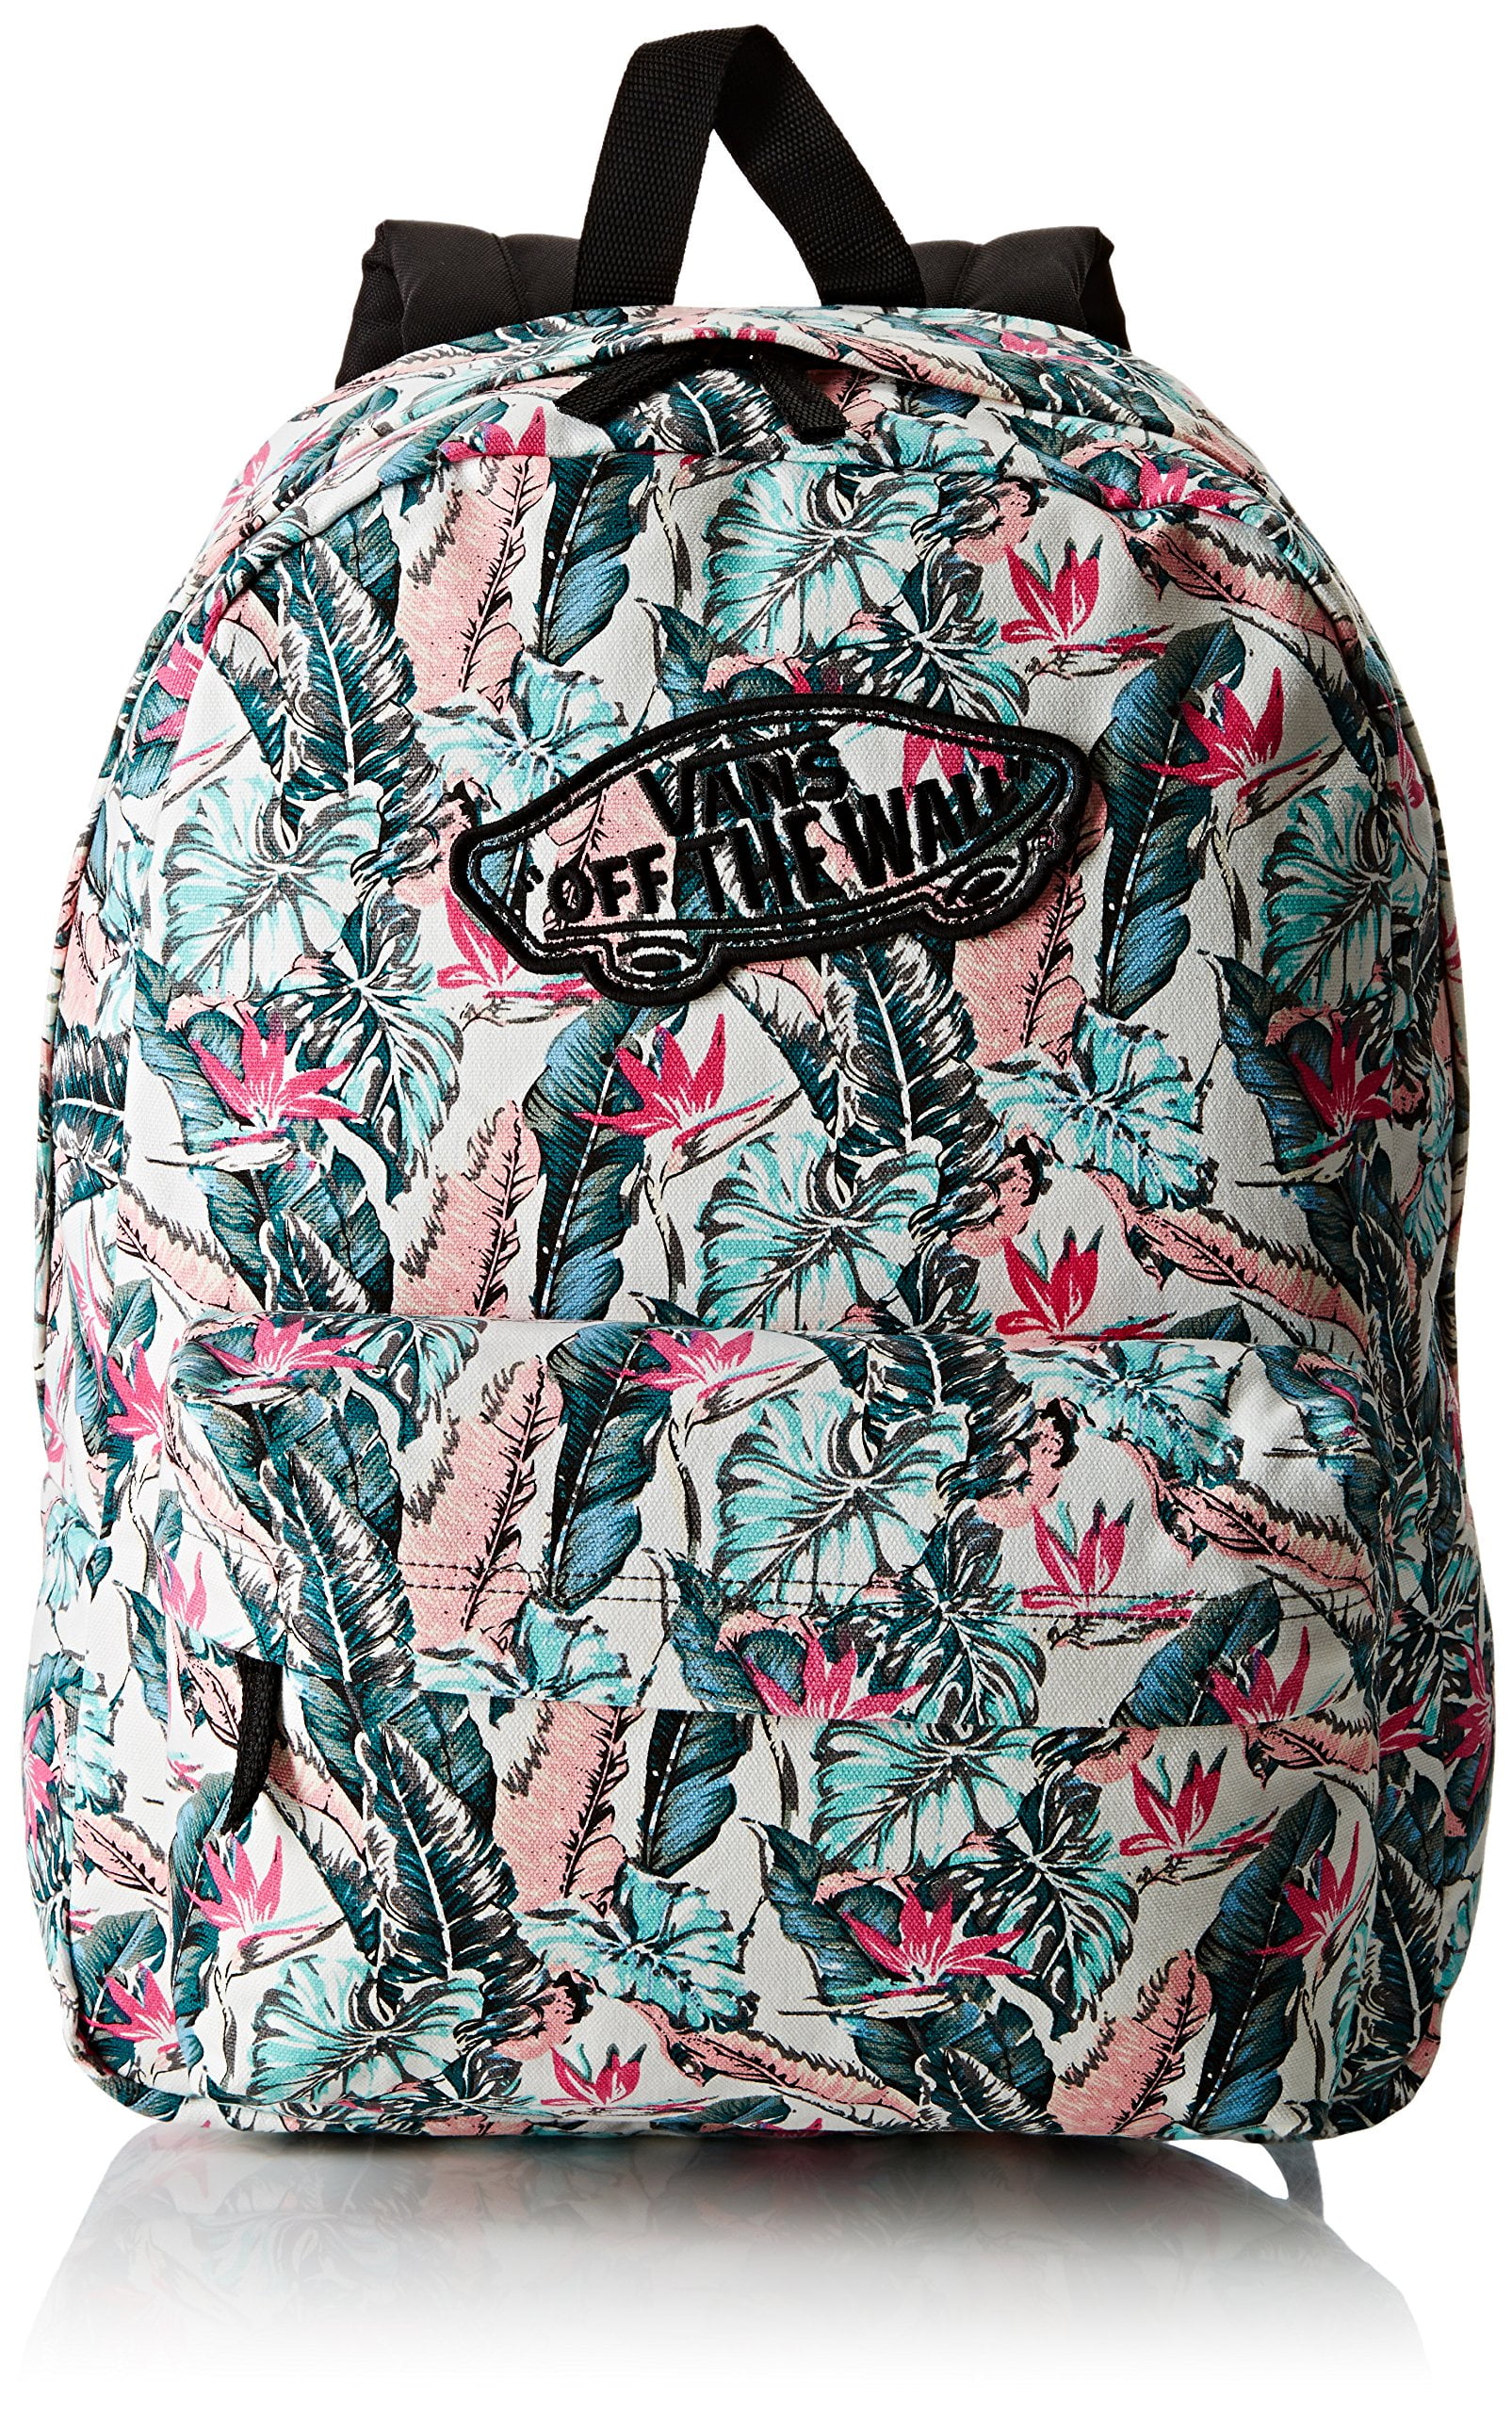 tropical vans backpack